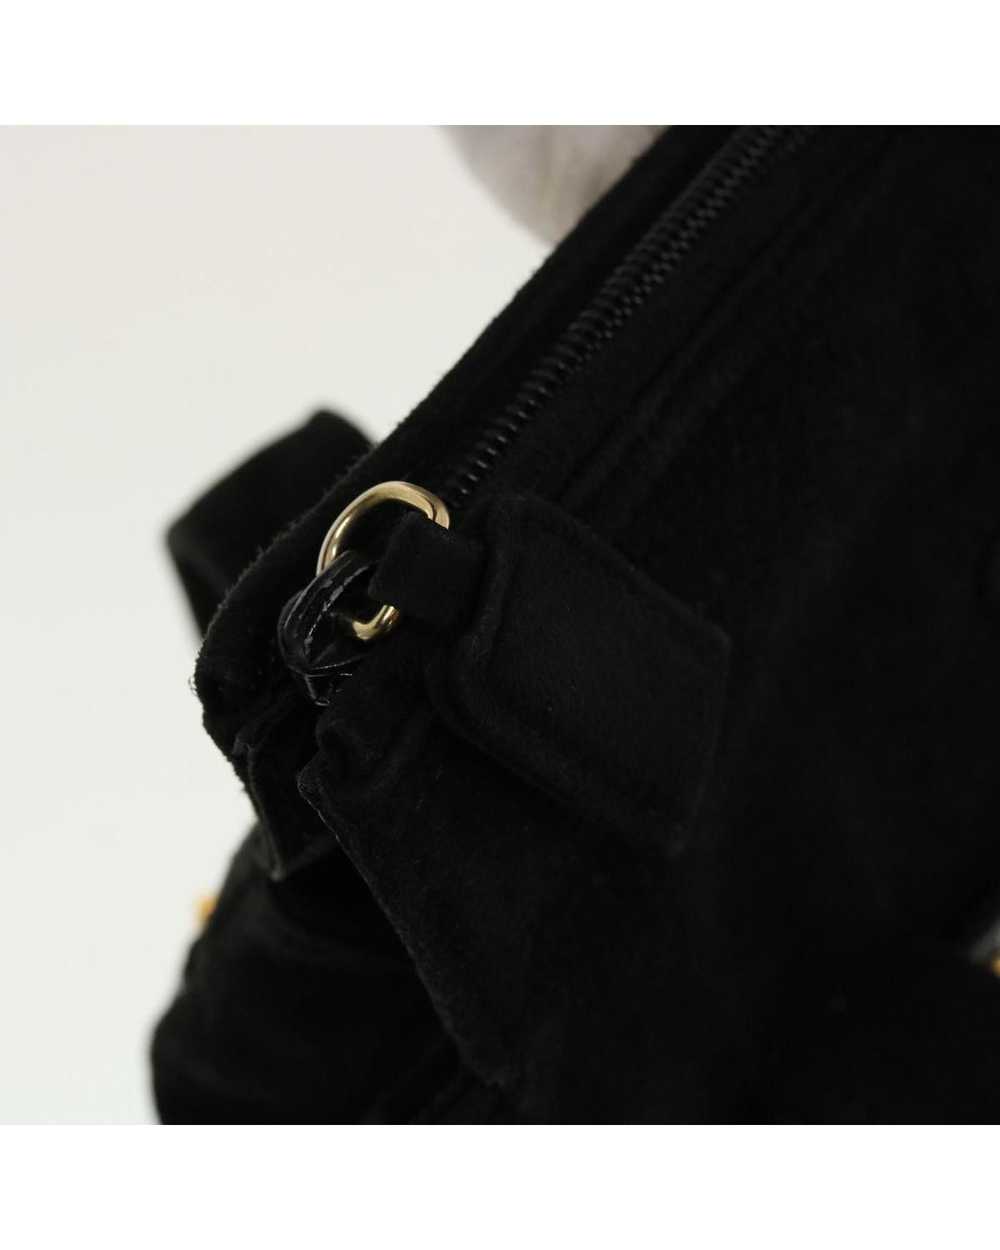 Prada Black Suede Hand Bag - image 10